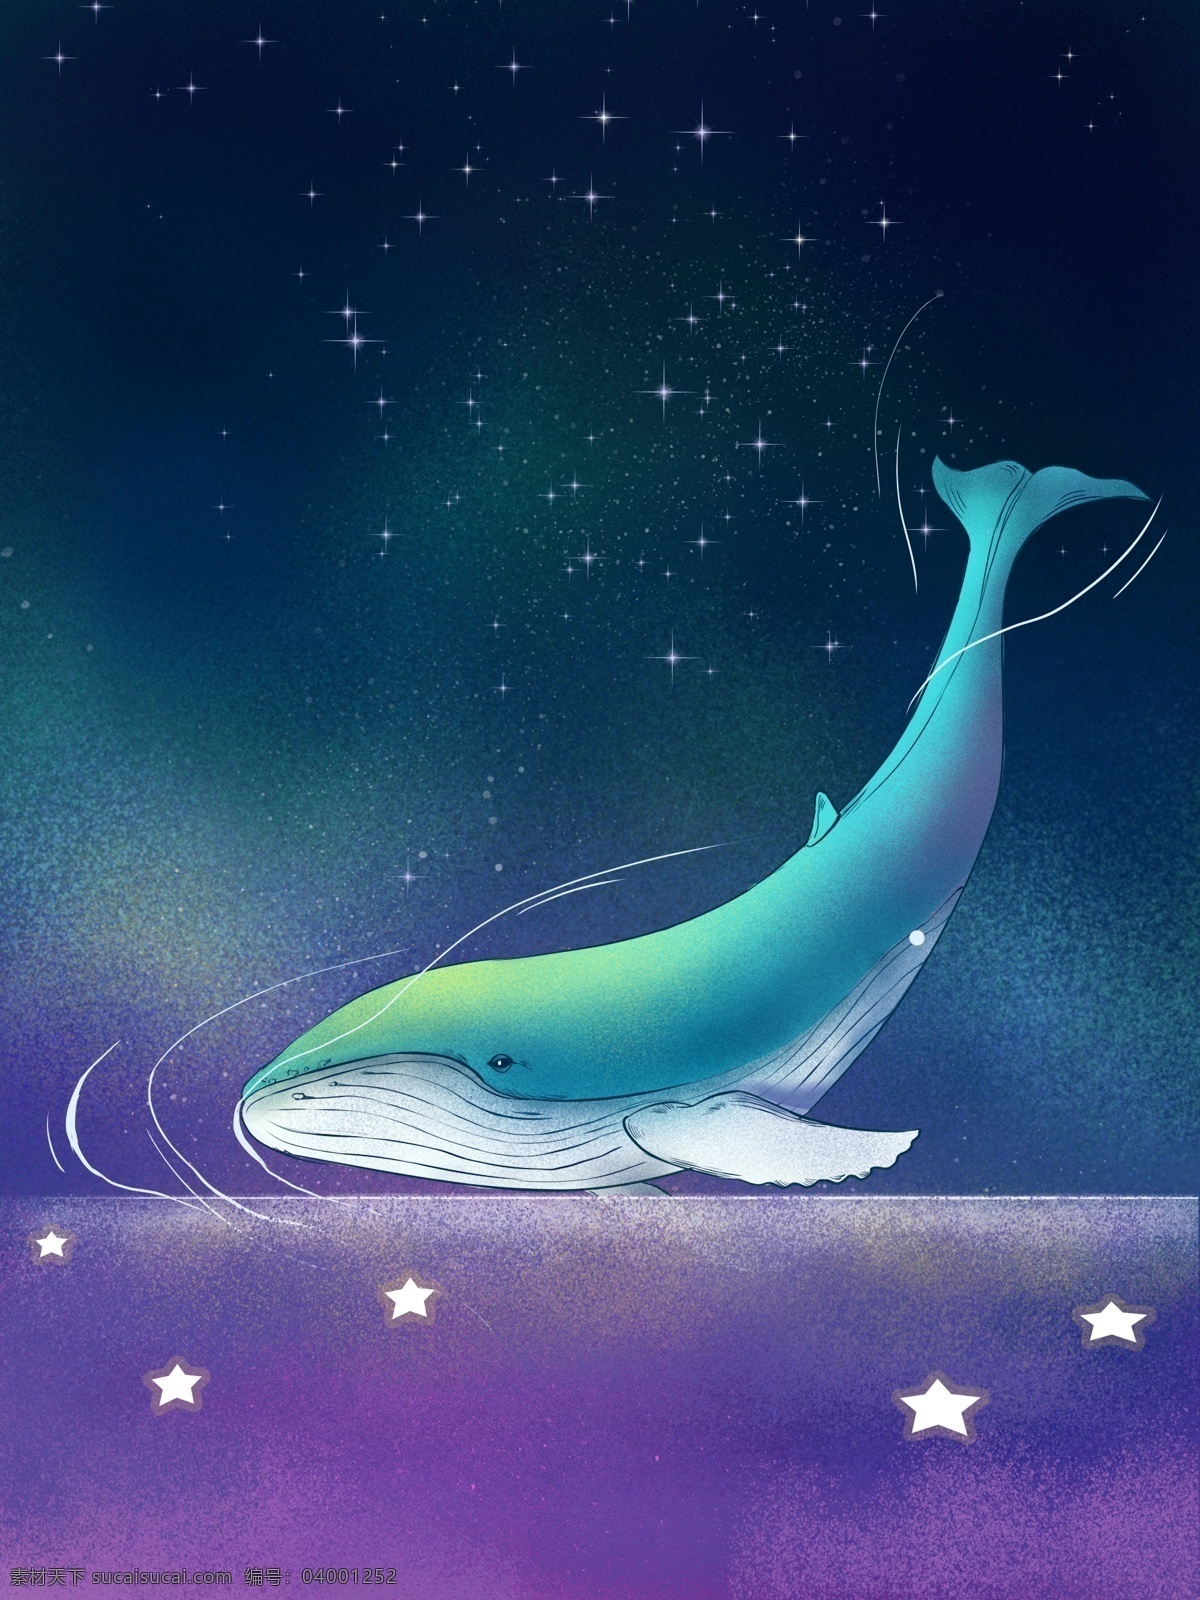 蓝色 大气 唯美 梦境 鲸鱼 插画 背景 手绘 彩绘背景 鲸鱼背景 海边背景 海洋背景 梦幻星空